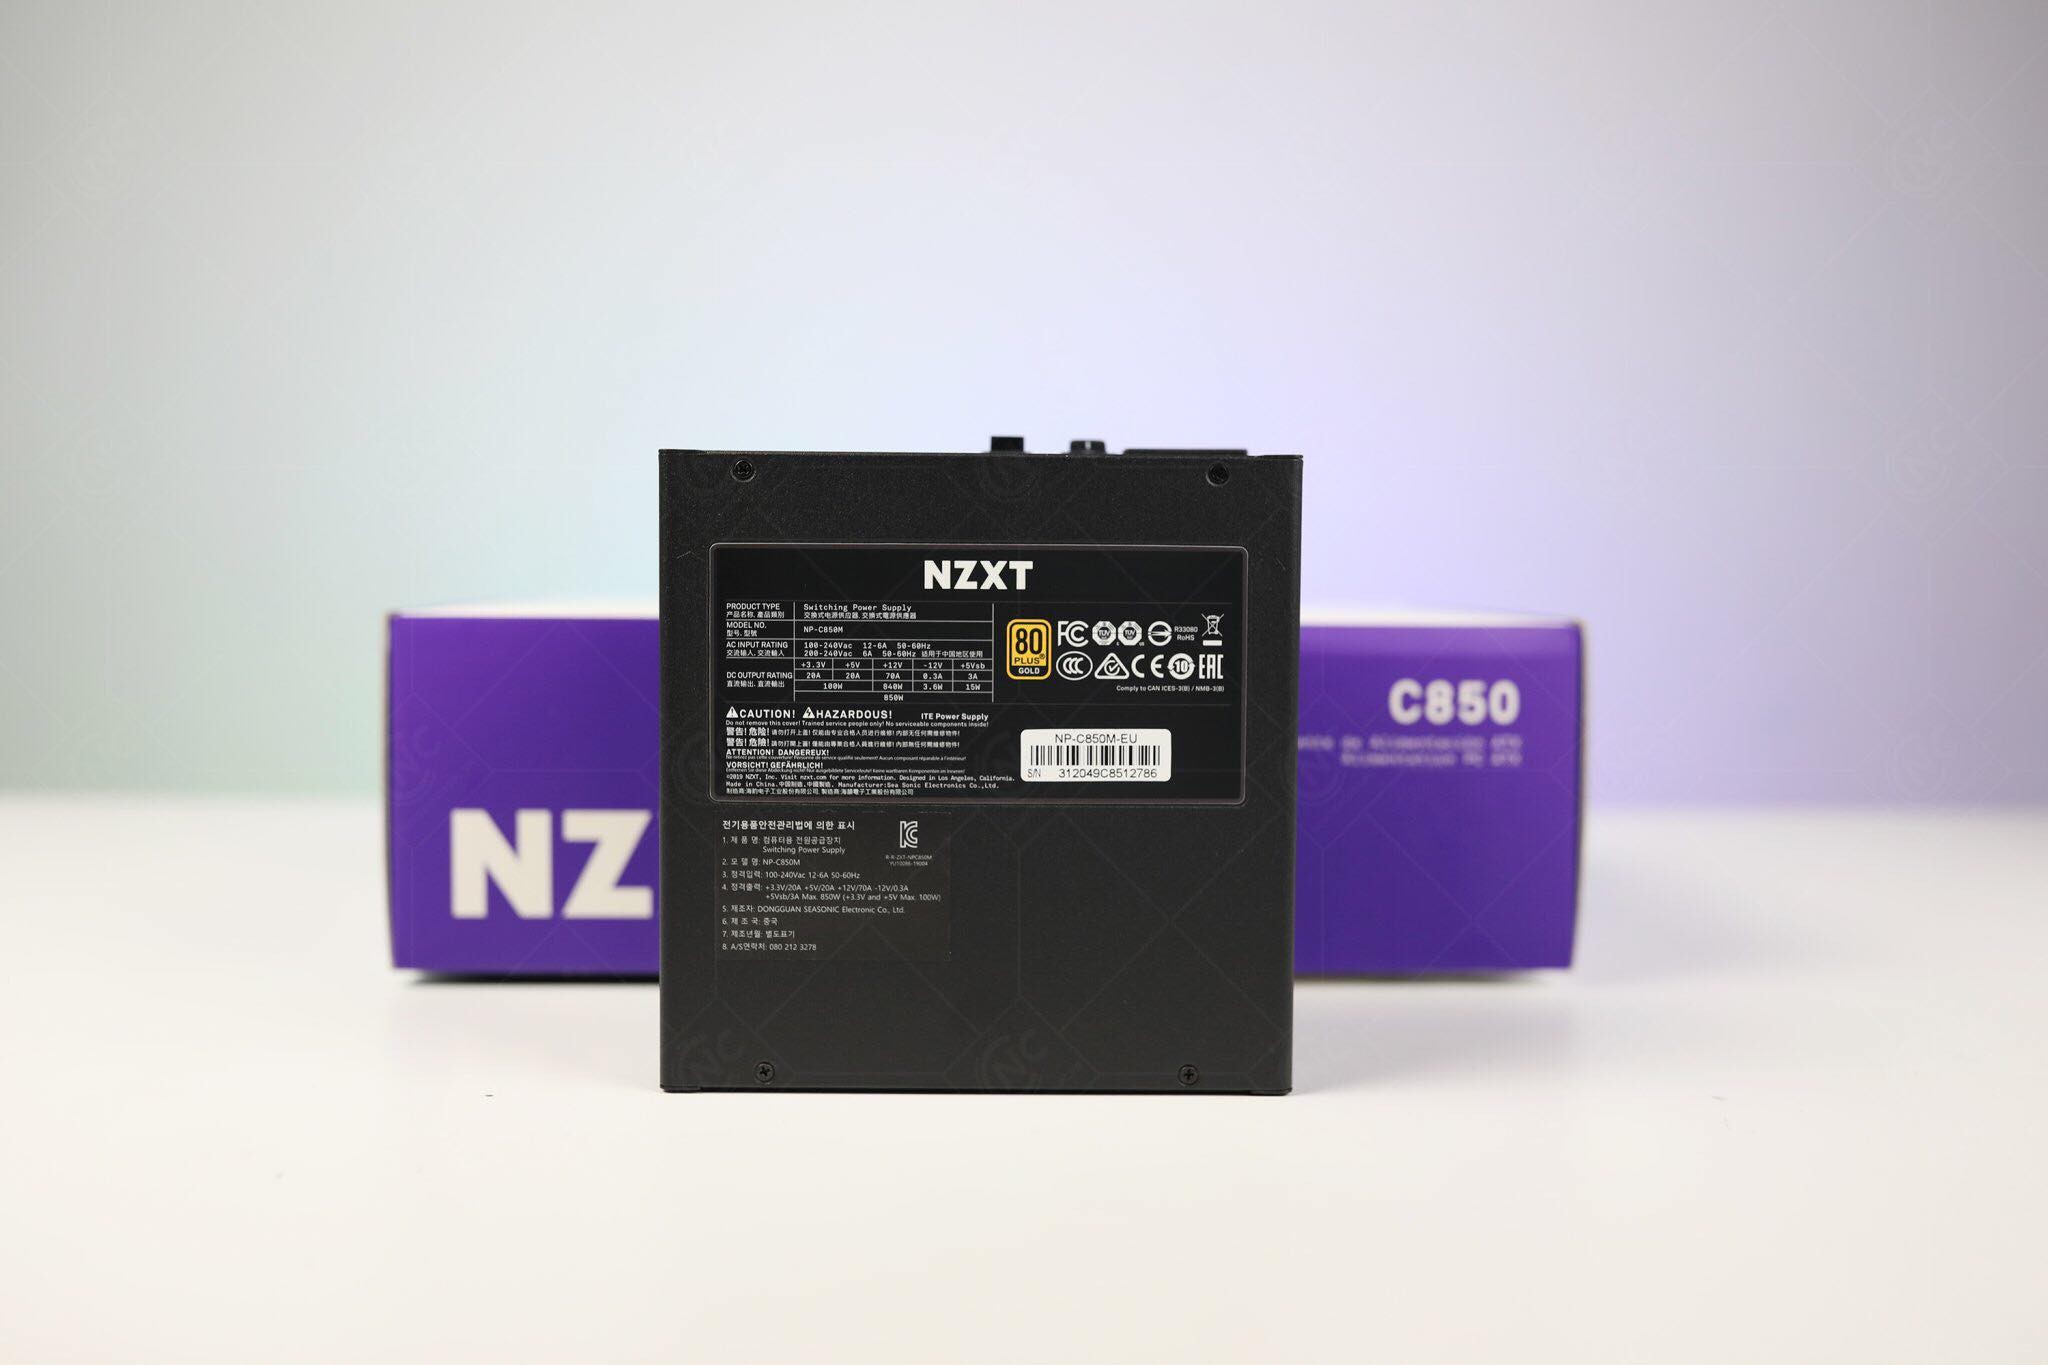 [Đánh giá] PSU NZXT C850 - Bộ nguồn chất lượng đến từ NZXT